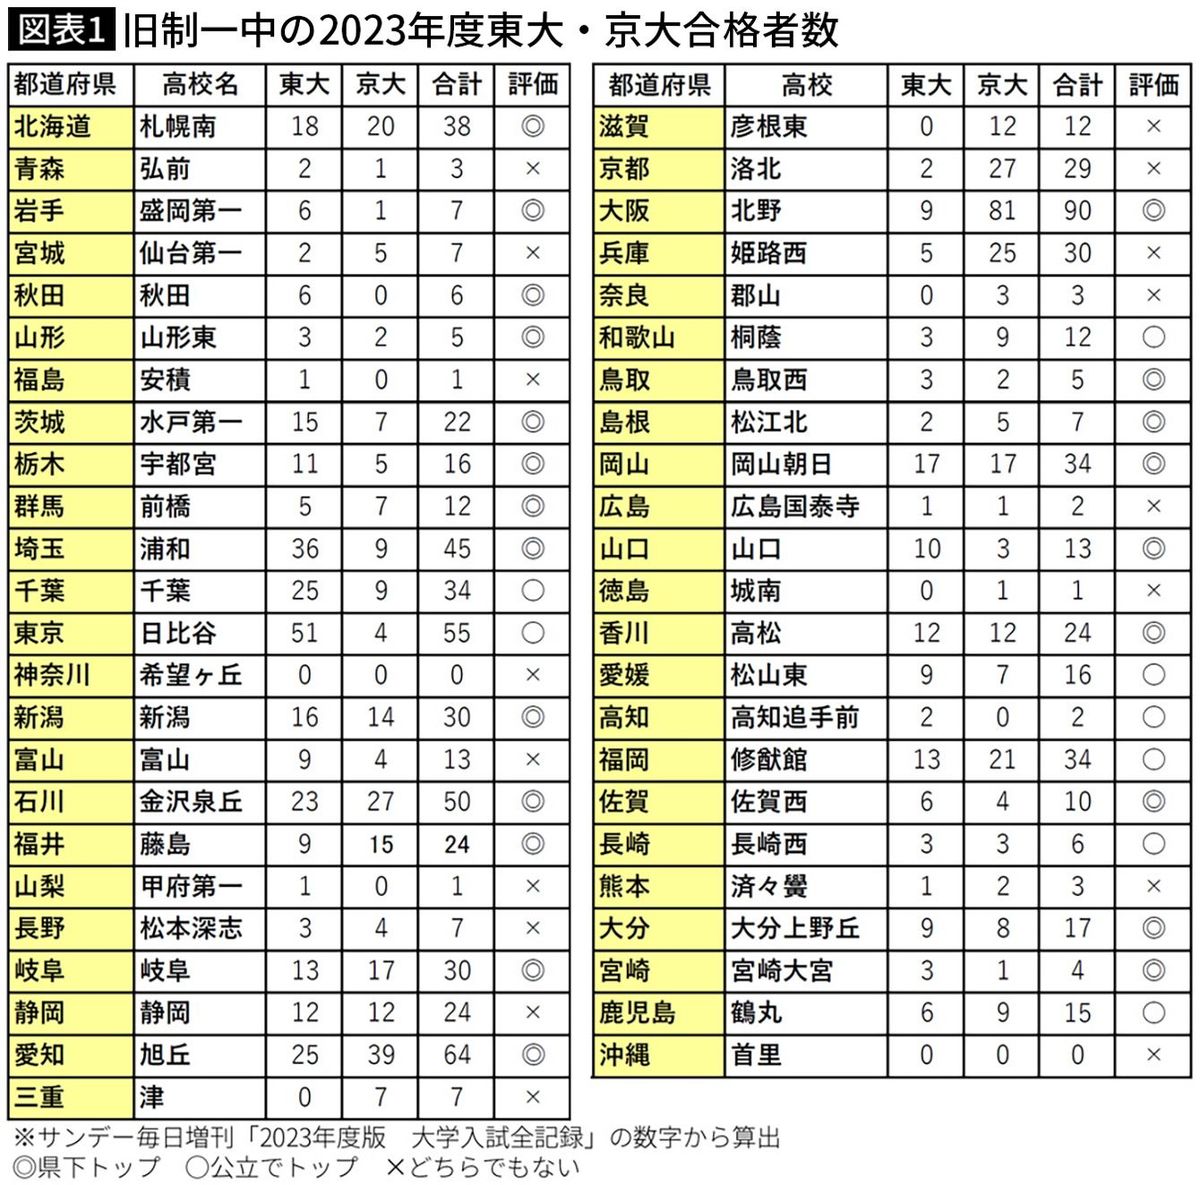 【図表】旧制一中の2023年度東大・京大合格者数